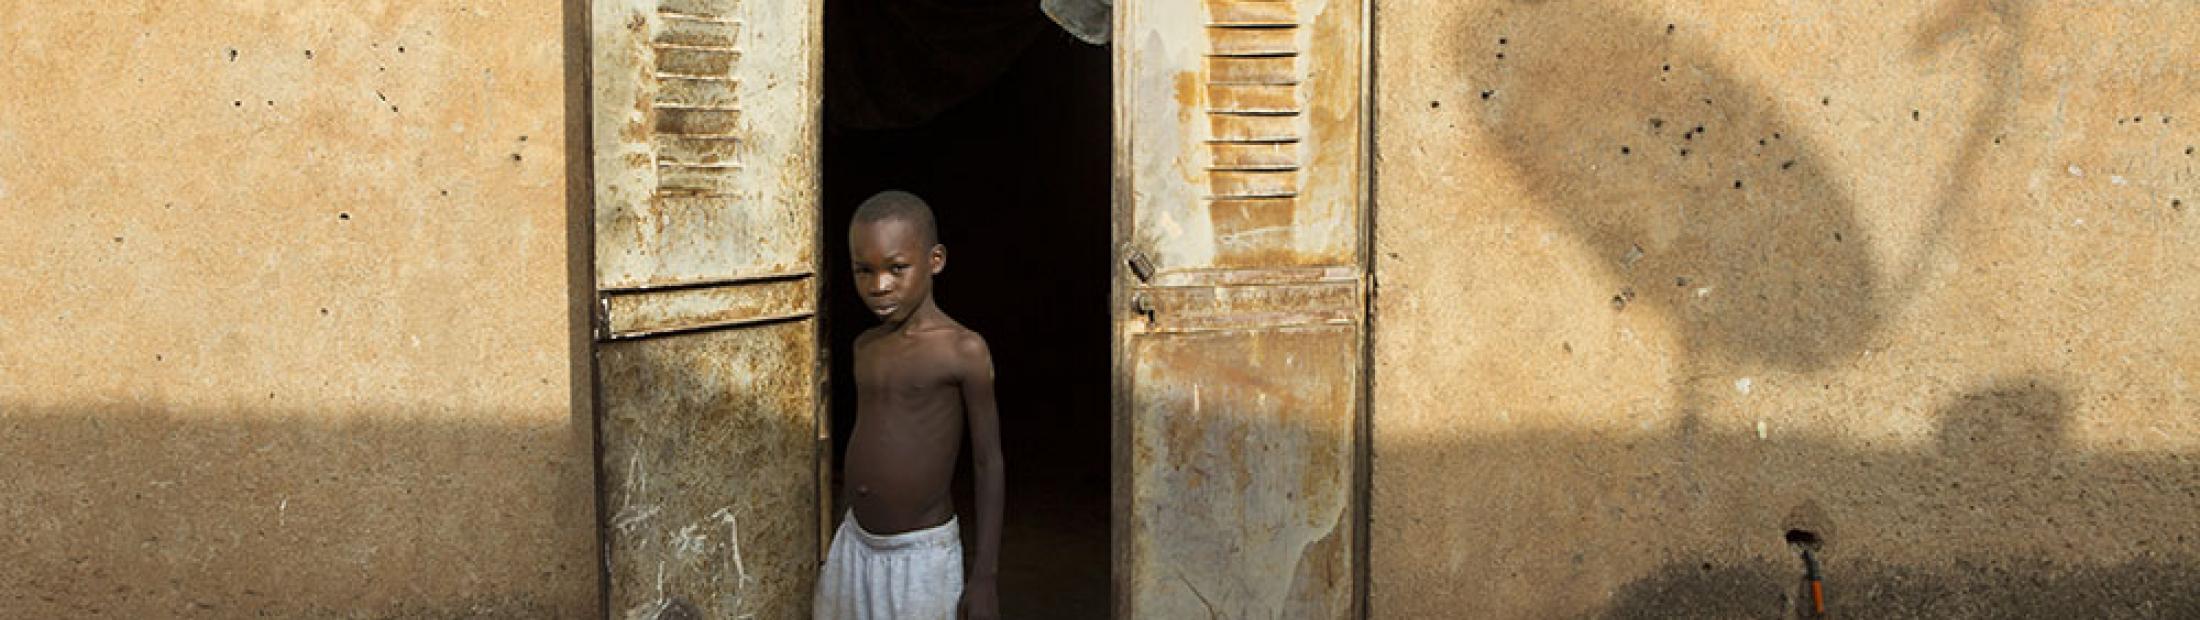 A pesar de las mejoras en seguridad en algunas áreas, el miedo a regresar sigue siendo generalizado en Malí